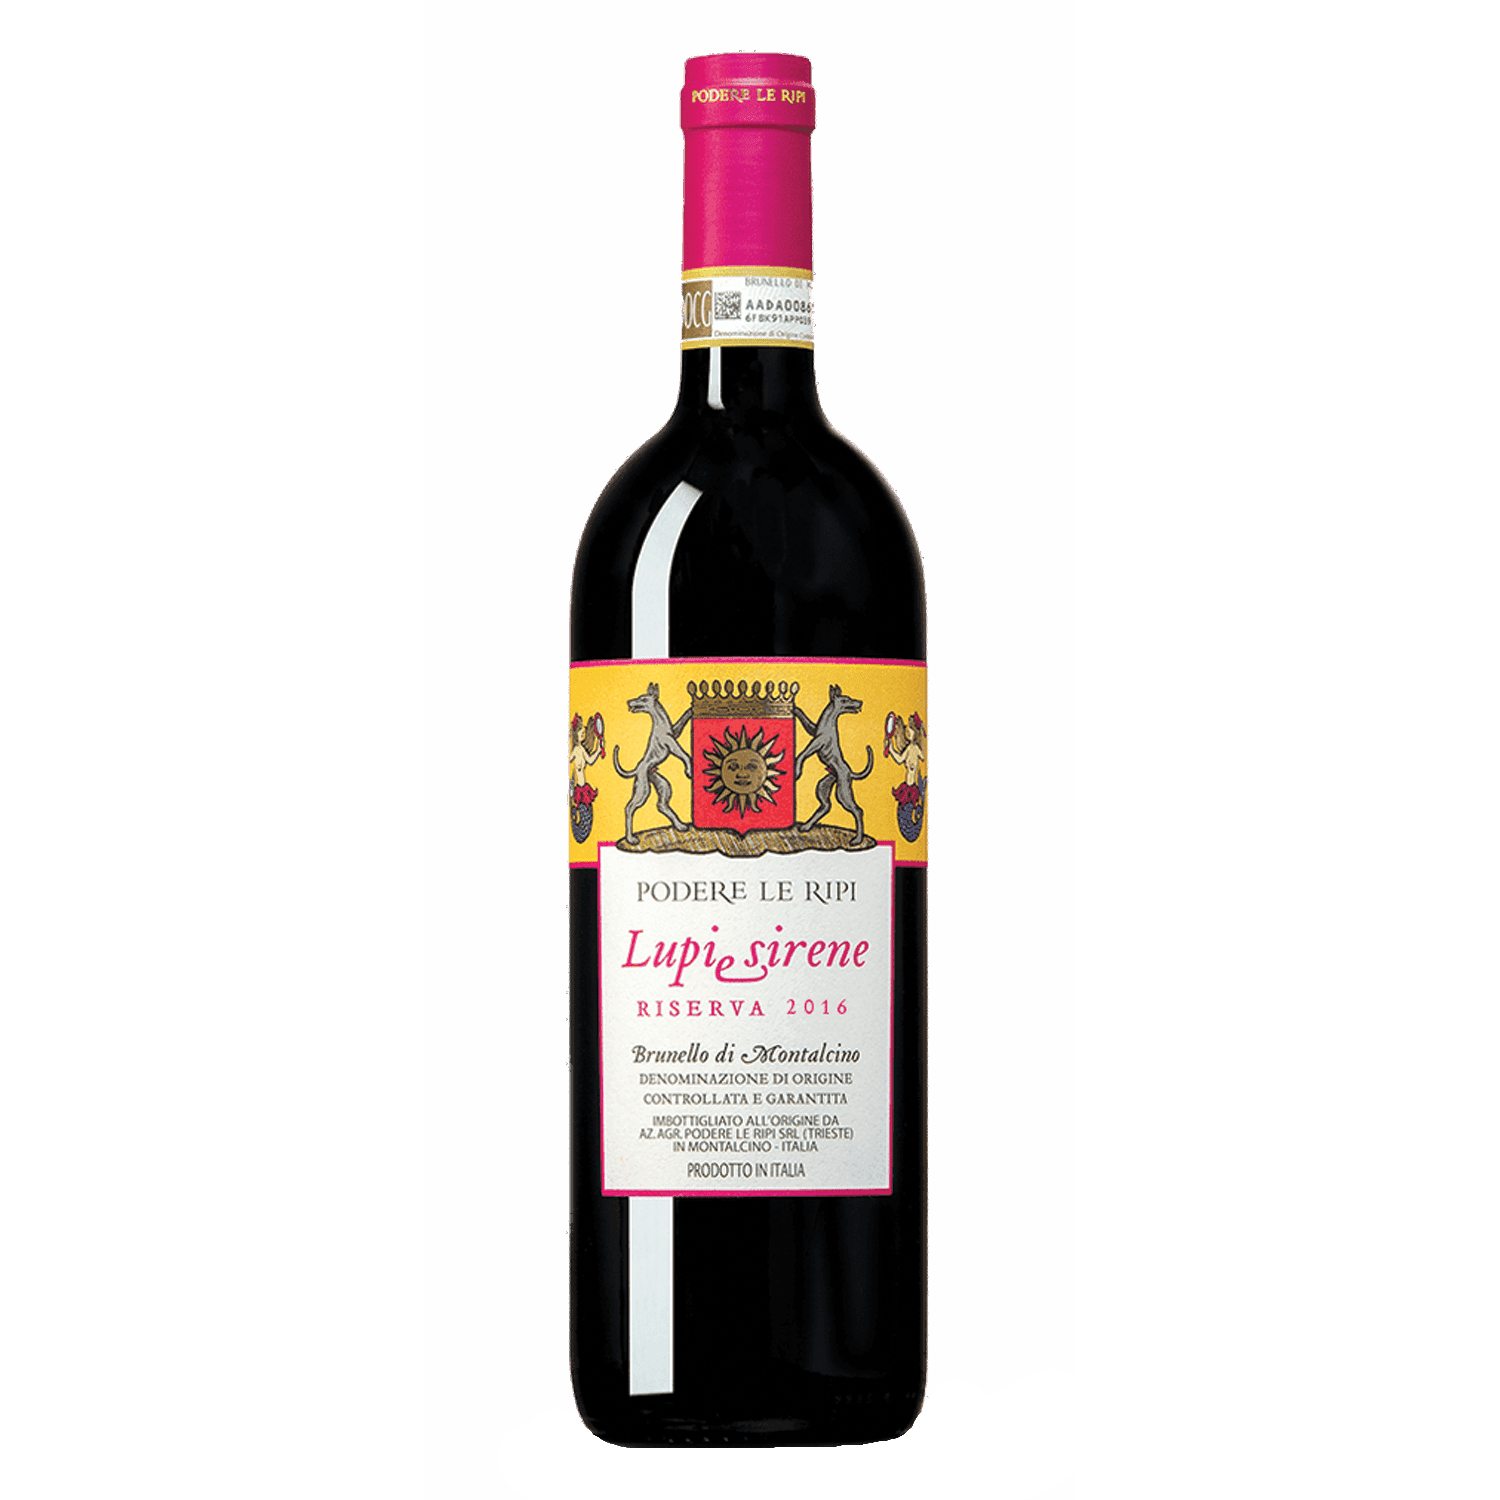 Selected image for PODERE LE RIPI Brunello di Montalcino Lupi e Sirene Riserva Crveno vino, 2016, 0.75l